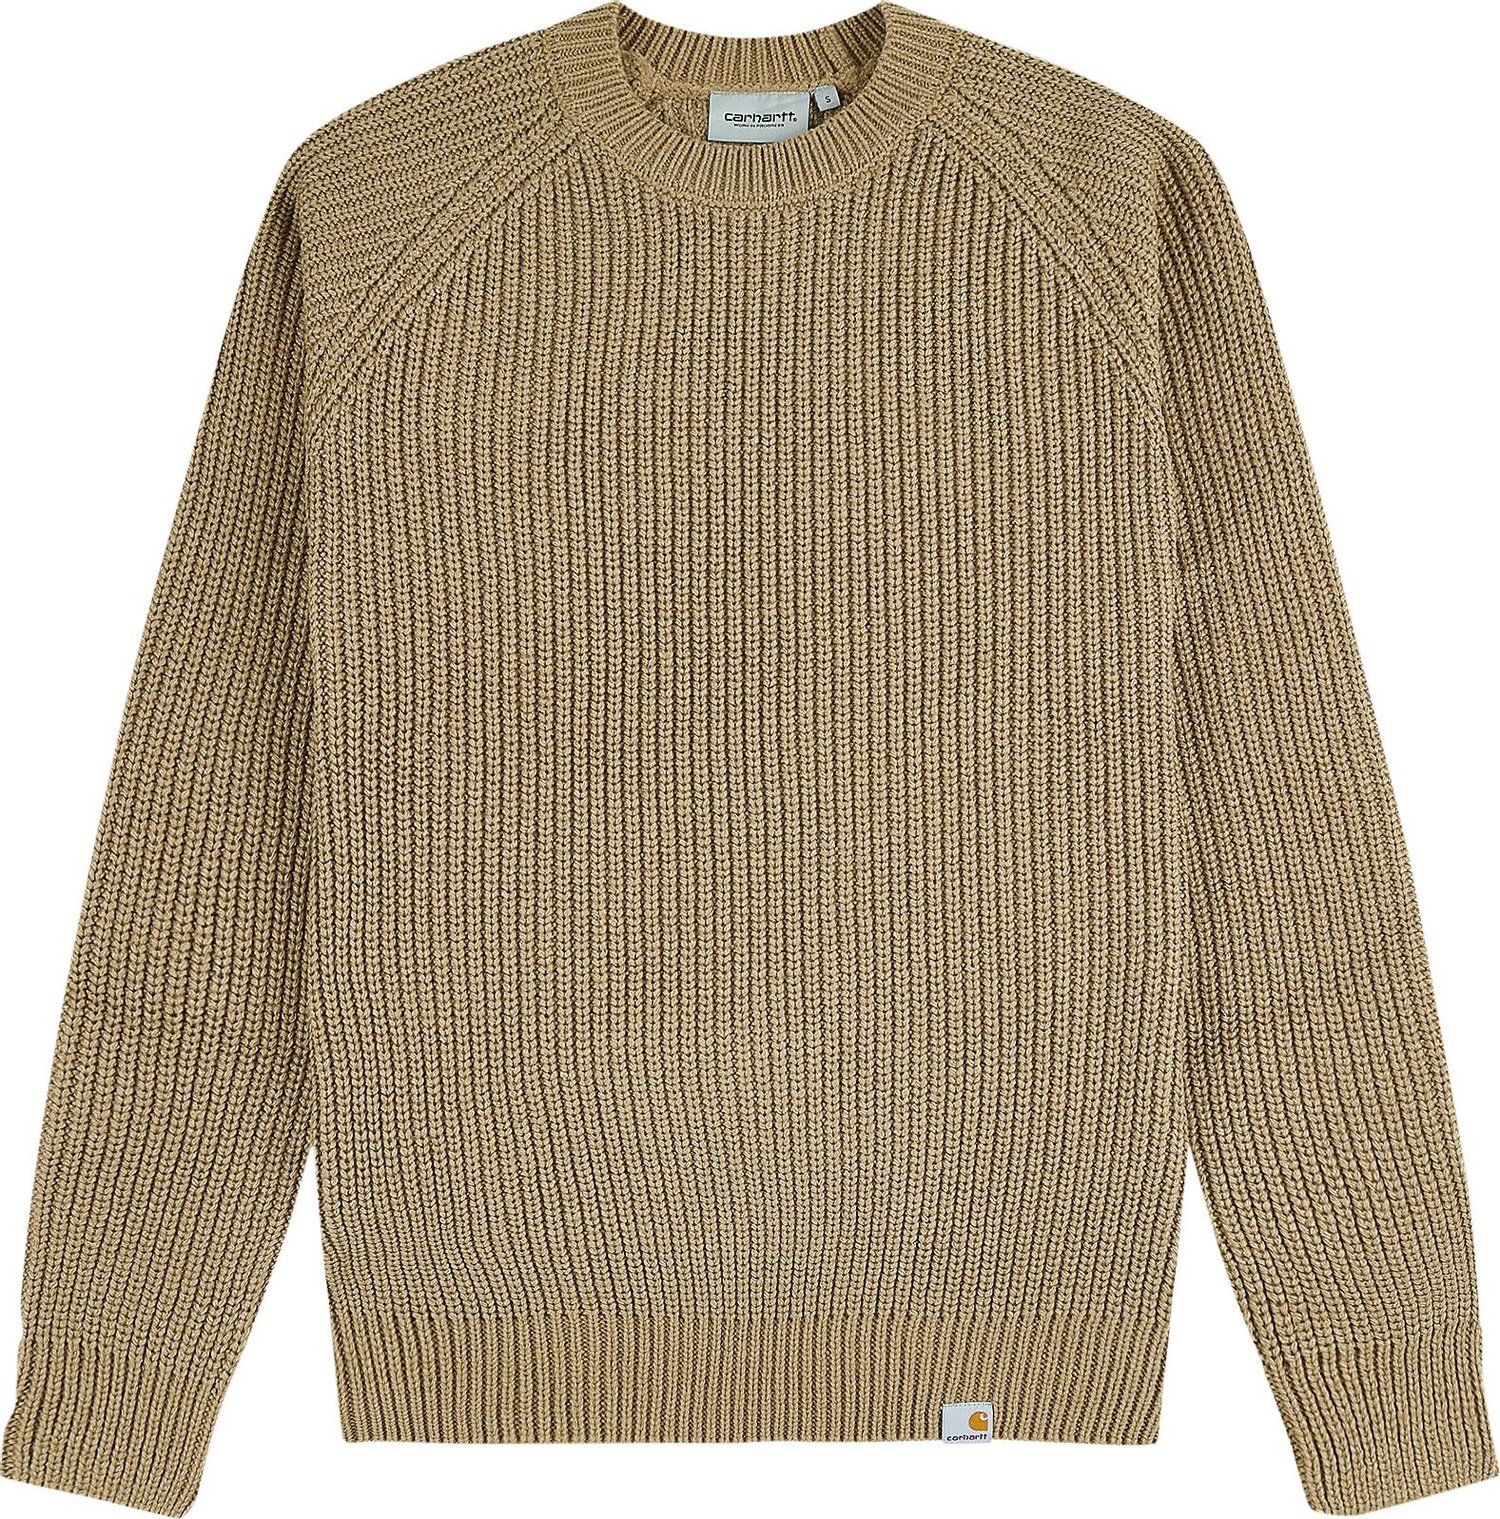 Buy Carhartt WIP Forth Sweater 'Tanami' - I028263 TANA | GOAT